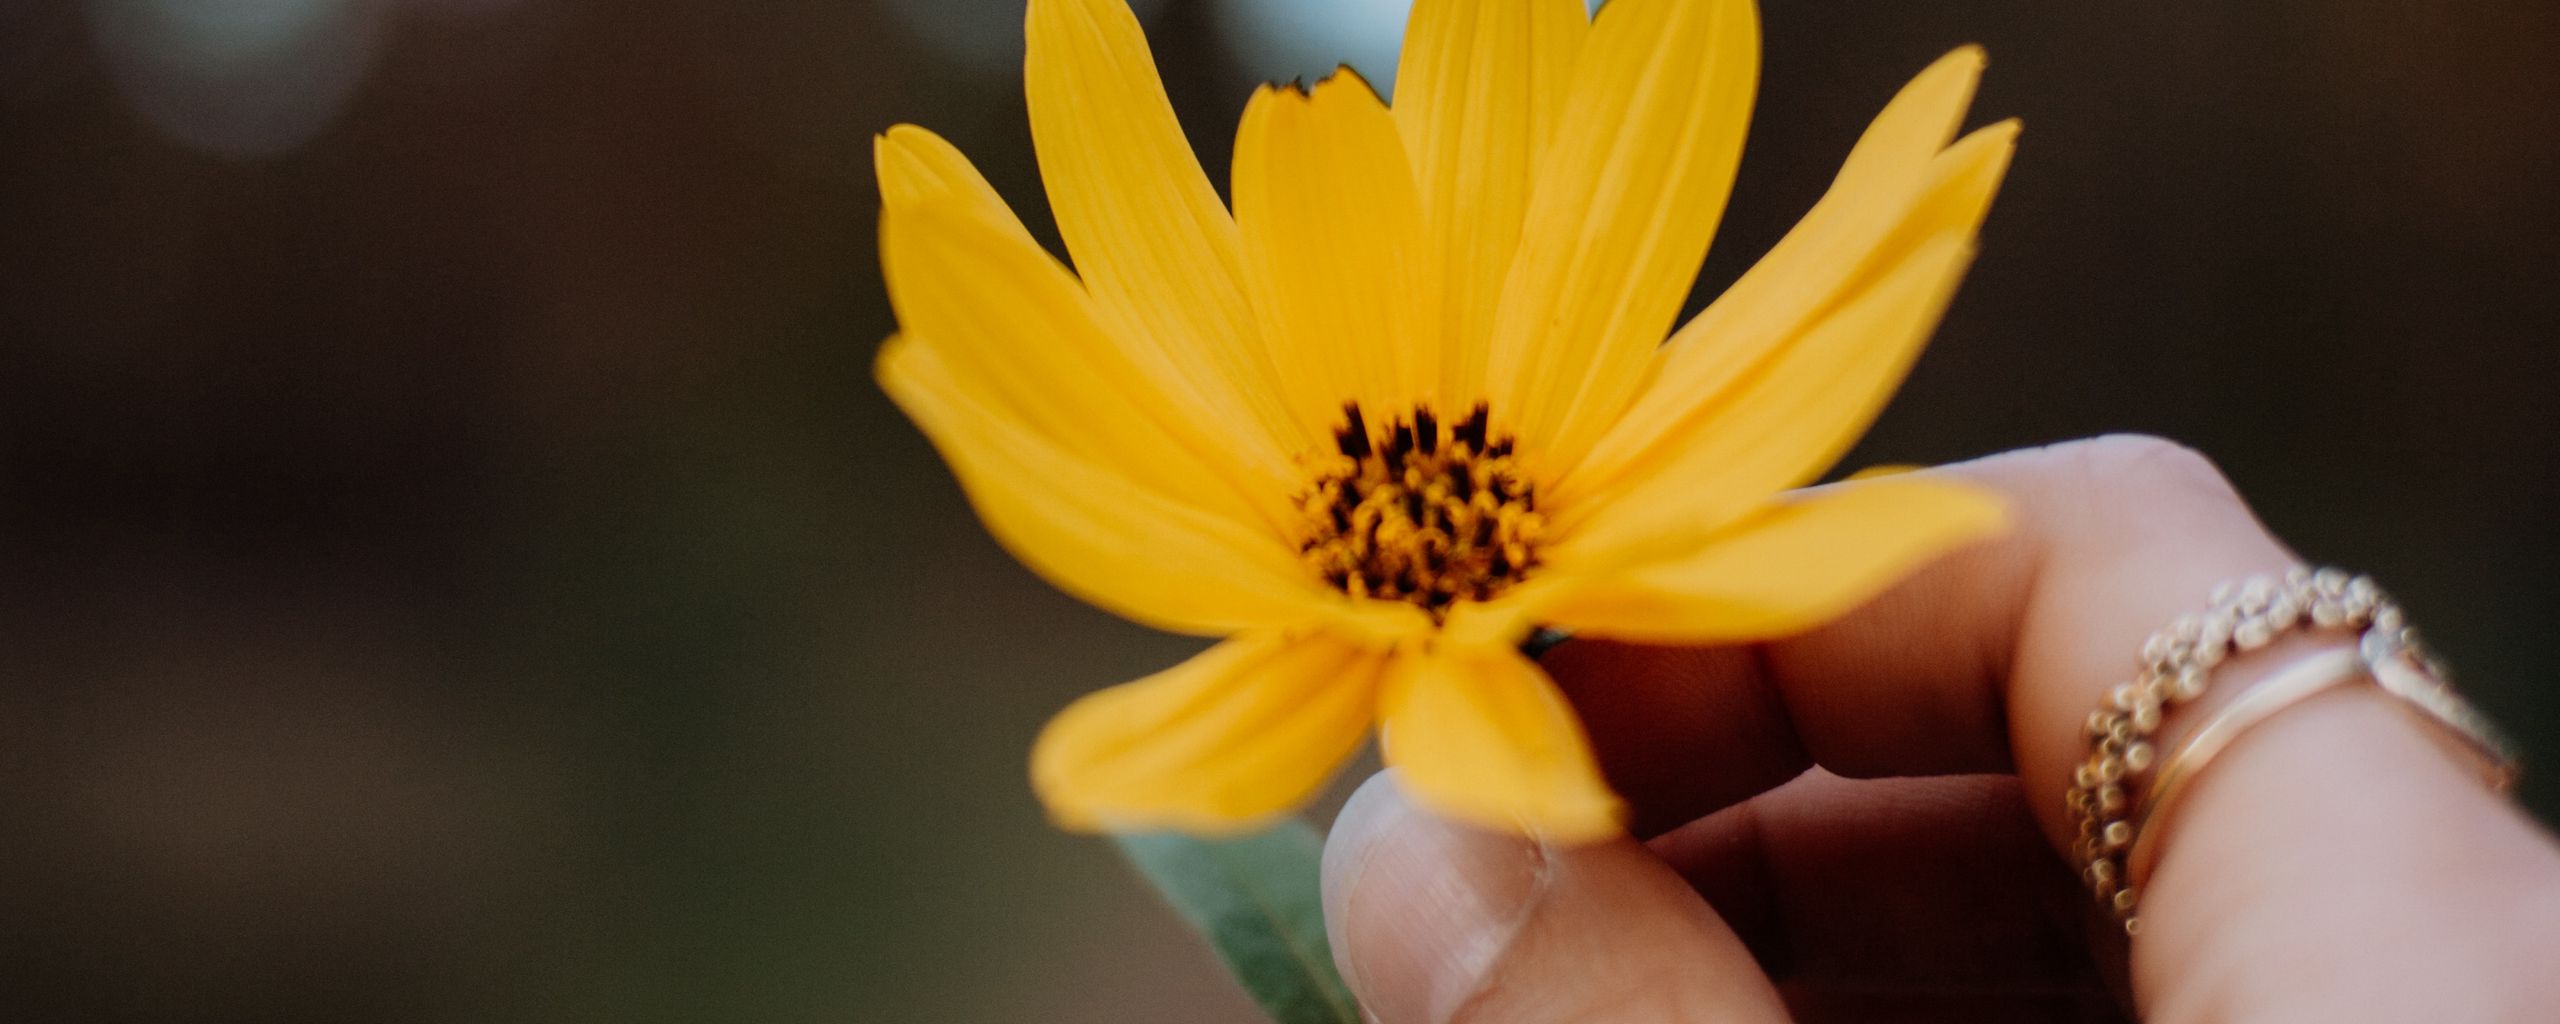 2560x1024 Wallpaper flower, yellow, hand, fingers, closeup